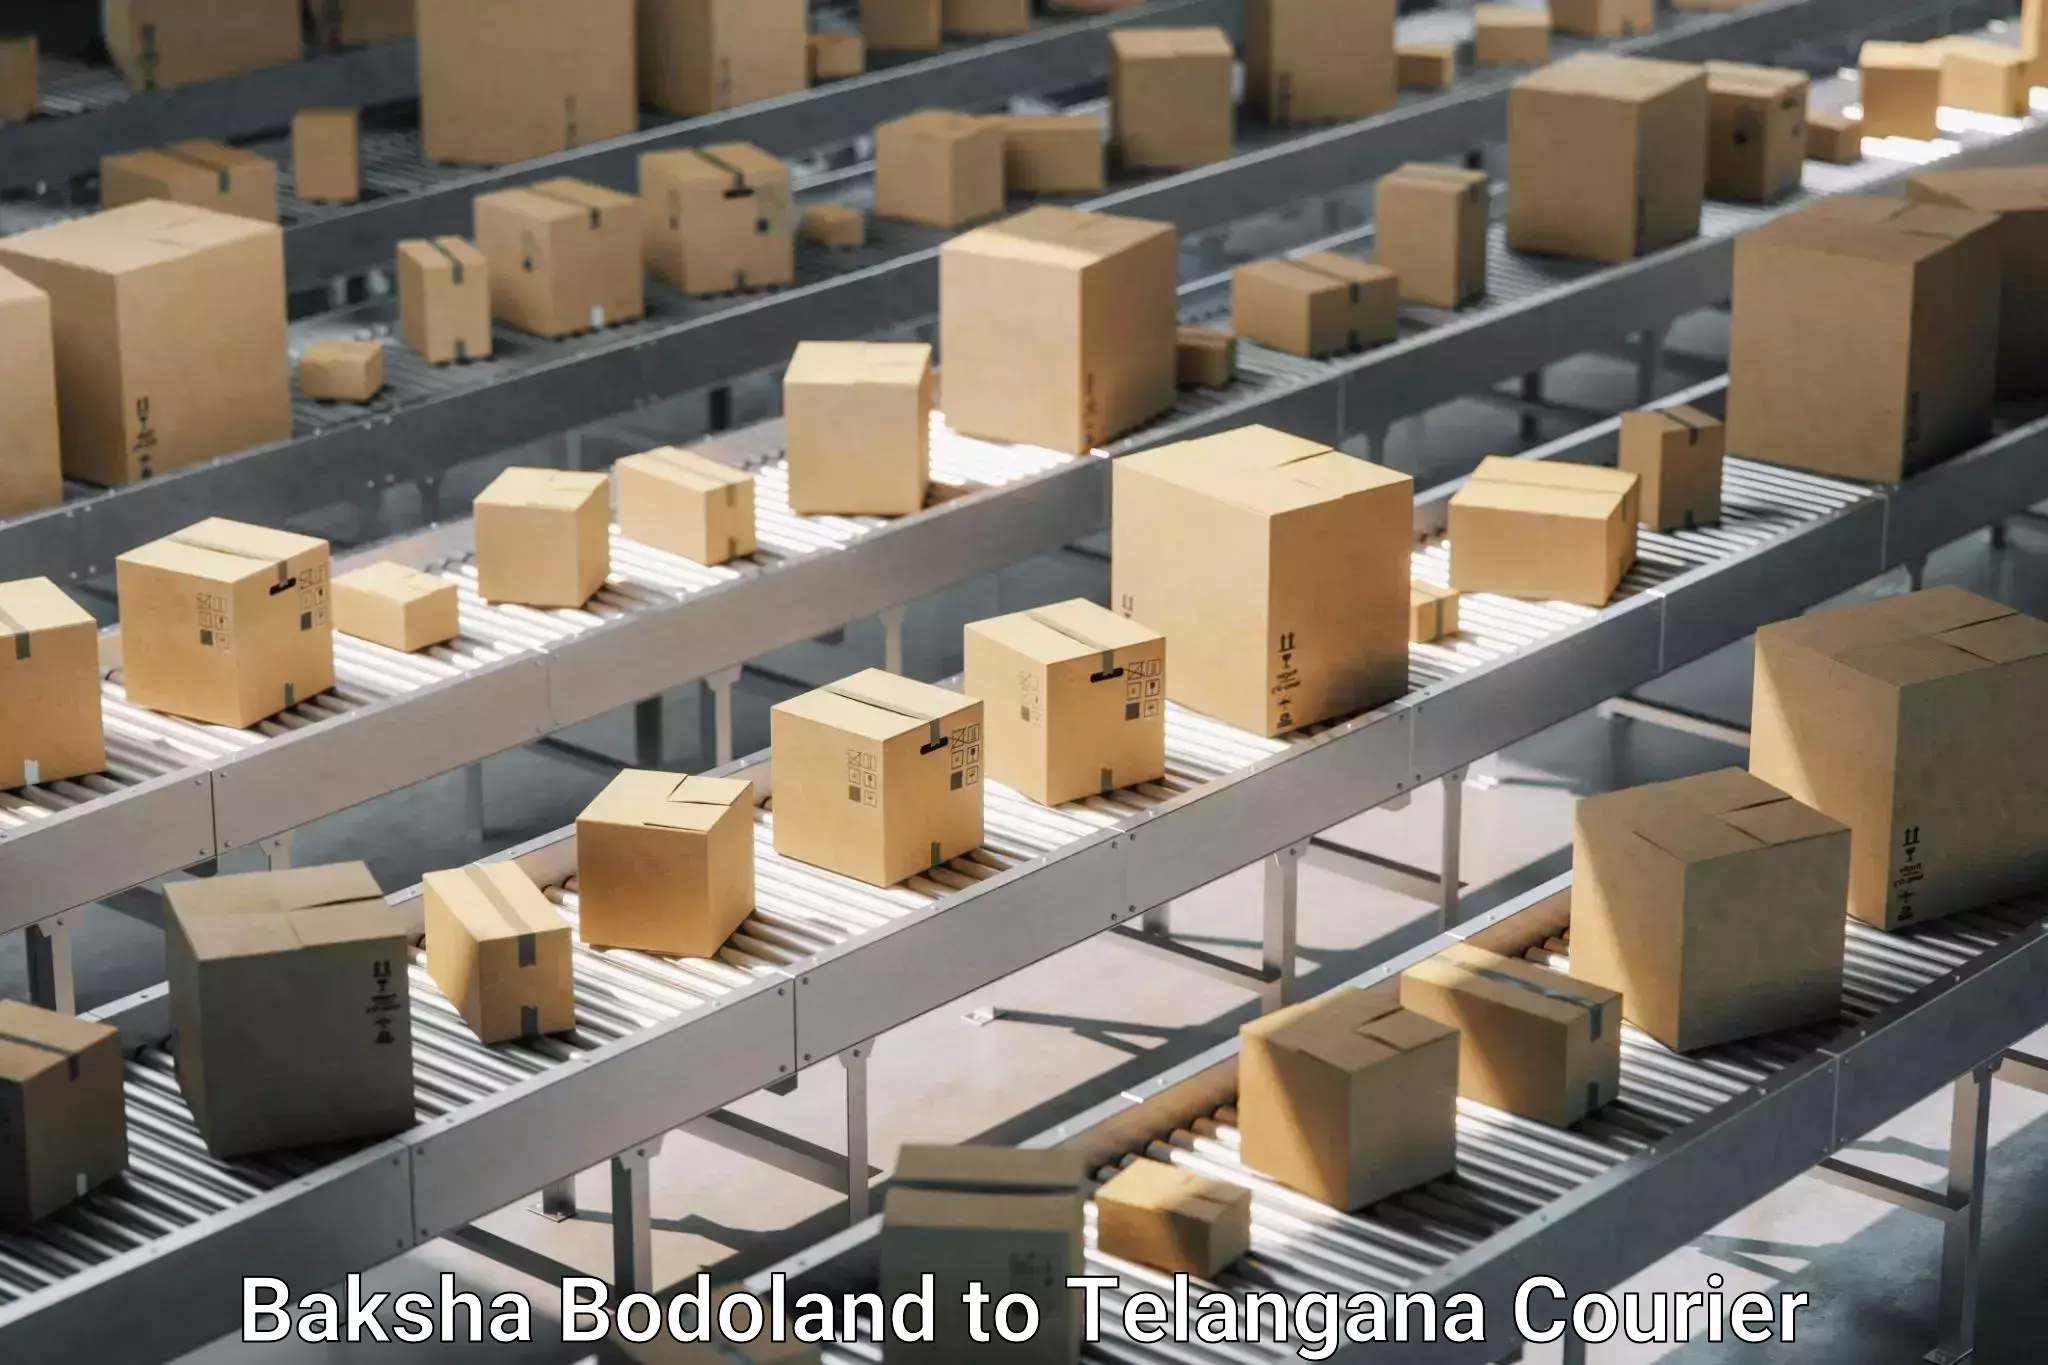 Furniture moving experts Baksha Bodoland to Kothagudem